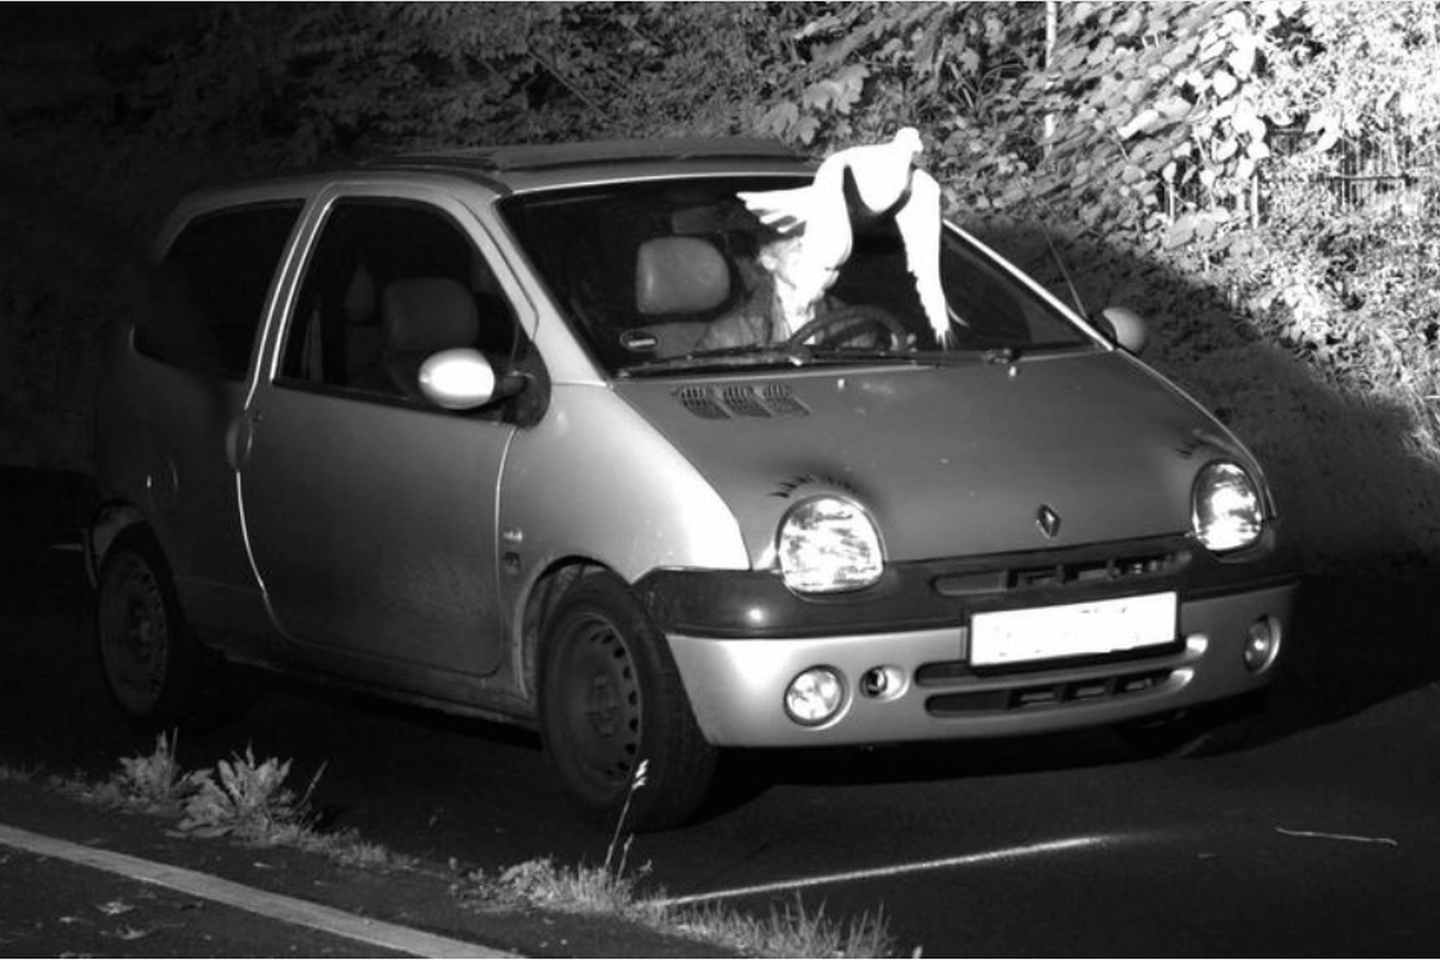  Balandis užstojo fotografuojamo pažeidėjo veidą, todėl policija negalėjo įrodyti, kas iš tiesų vairavo automobilį.<br> Vyrseno policijos komisariato nuotr.